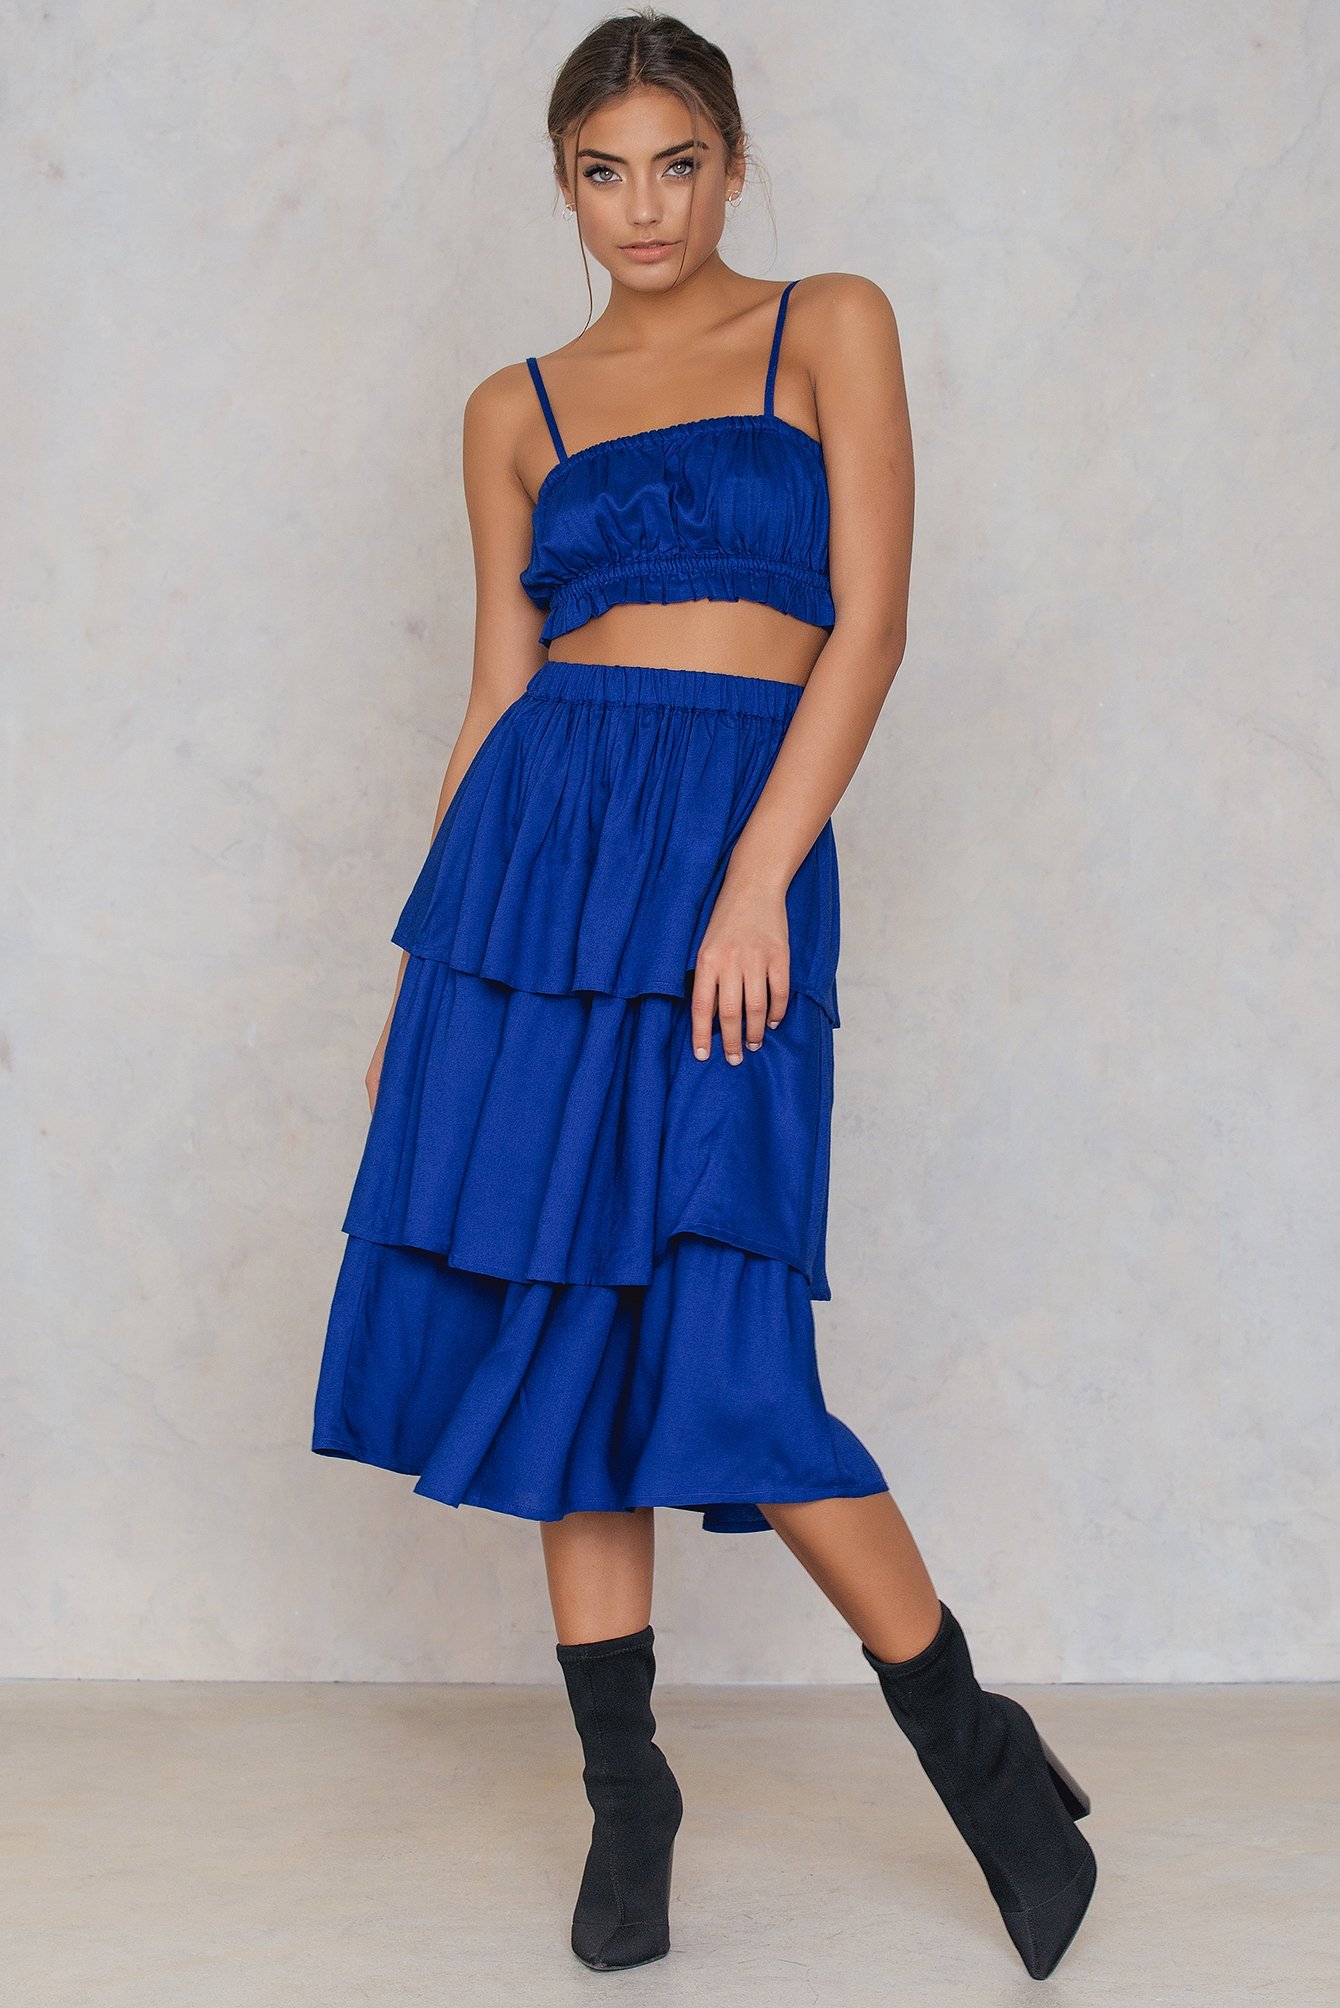 triple-layer-skirt-blau-na-kd